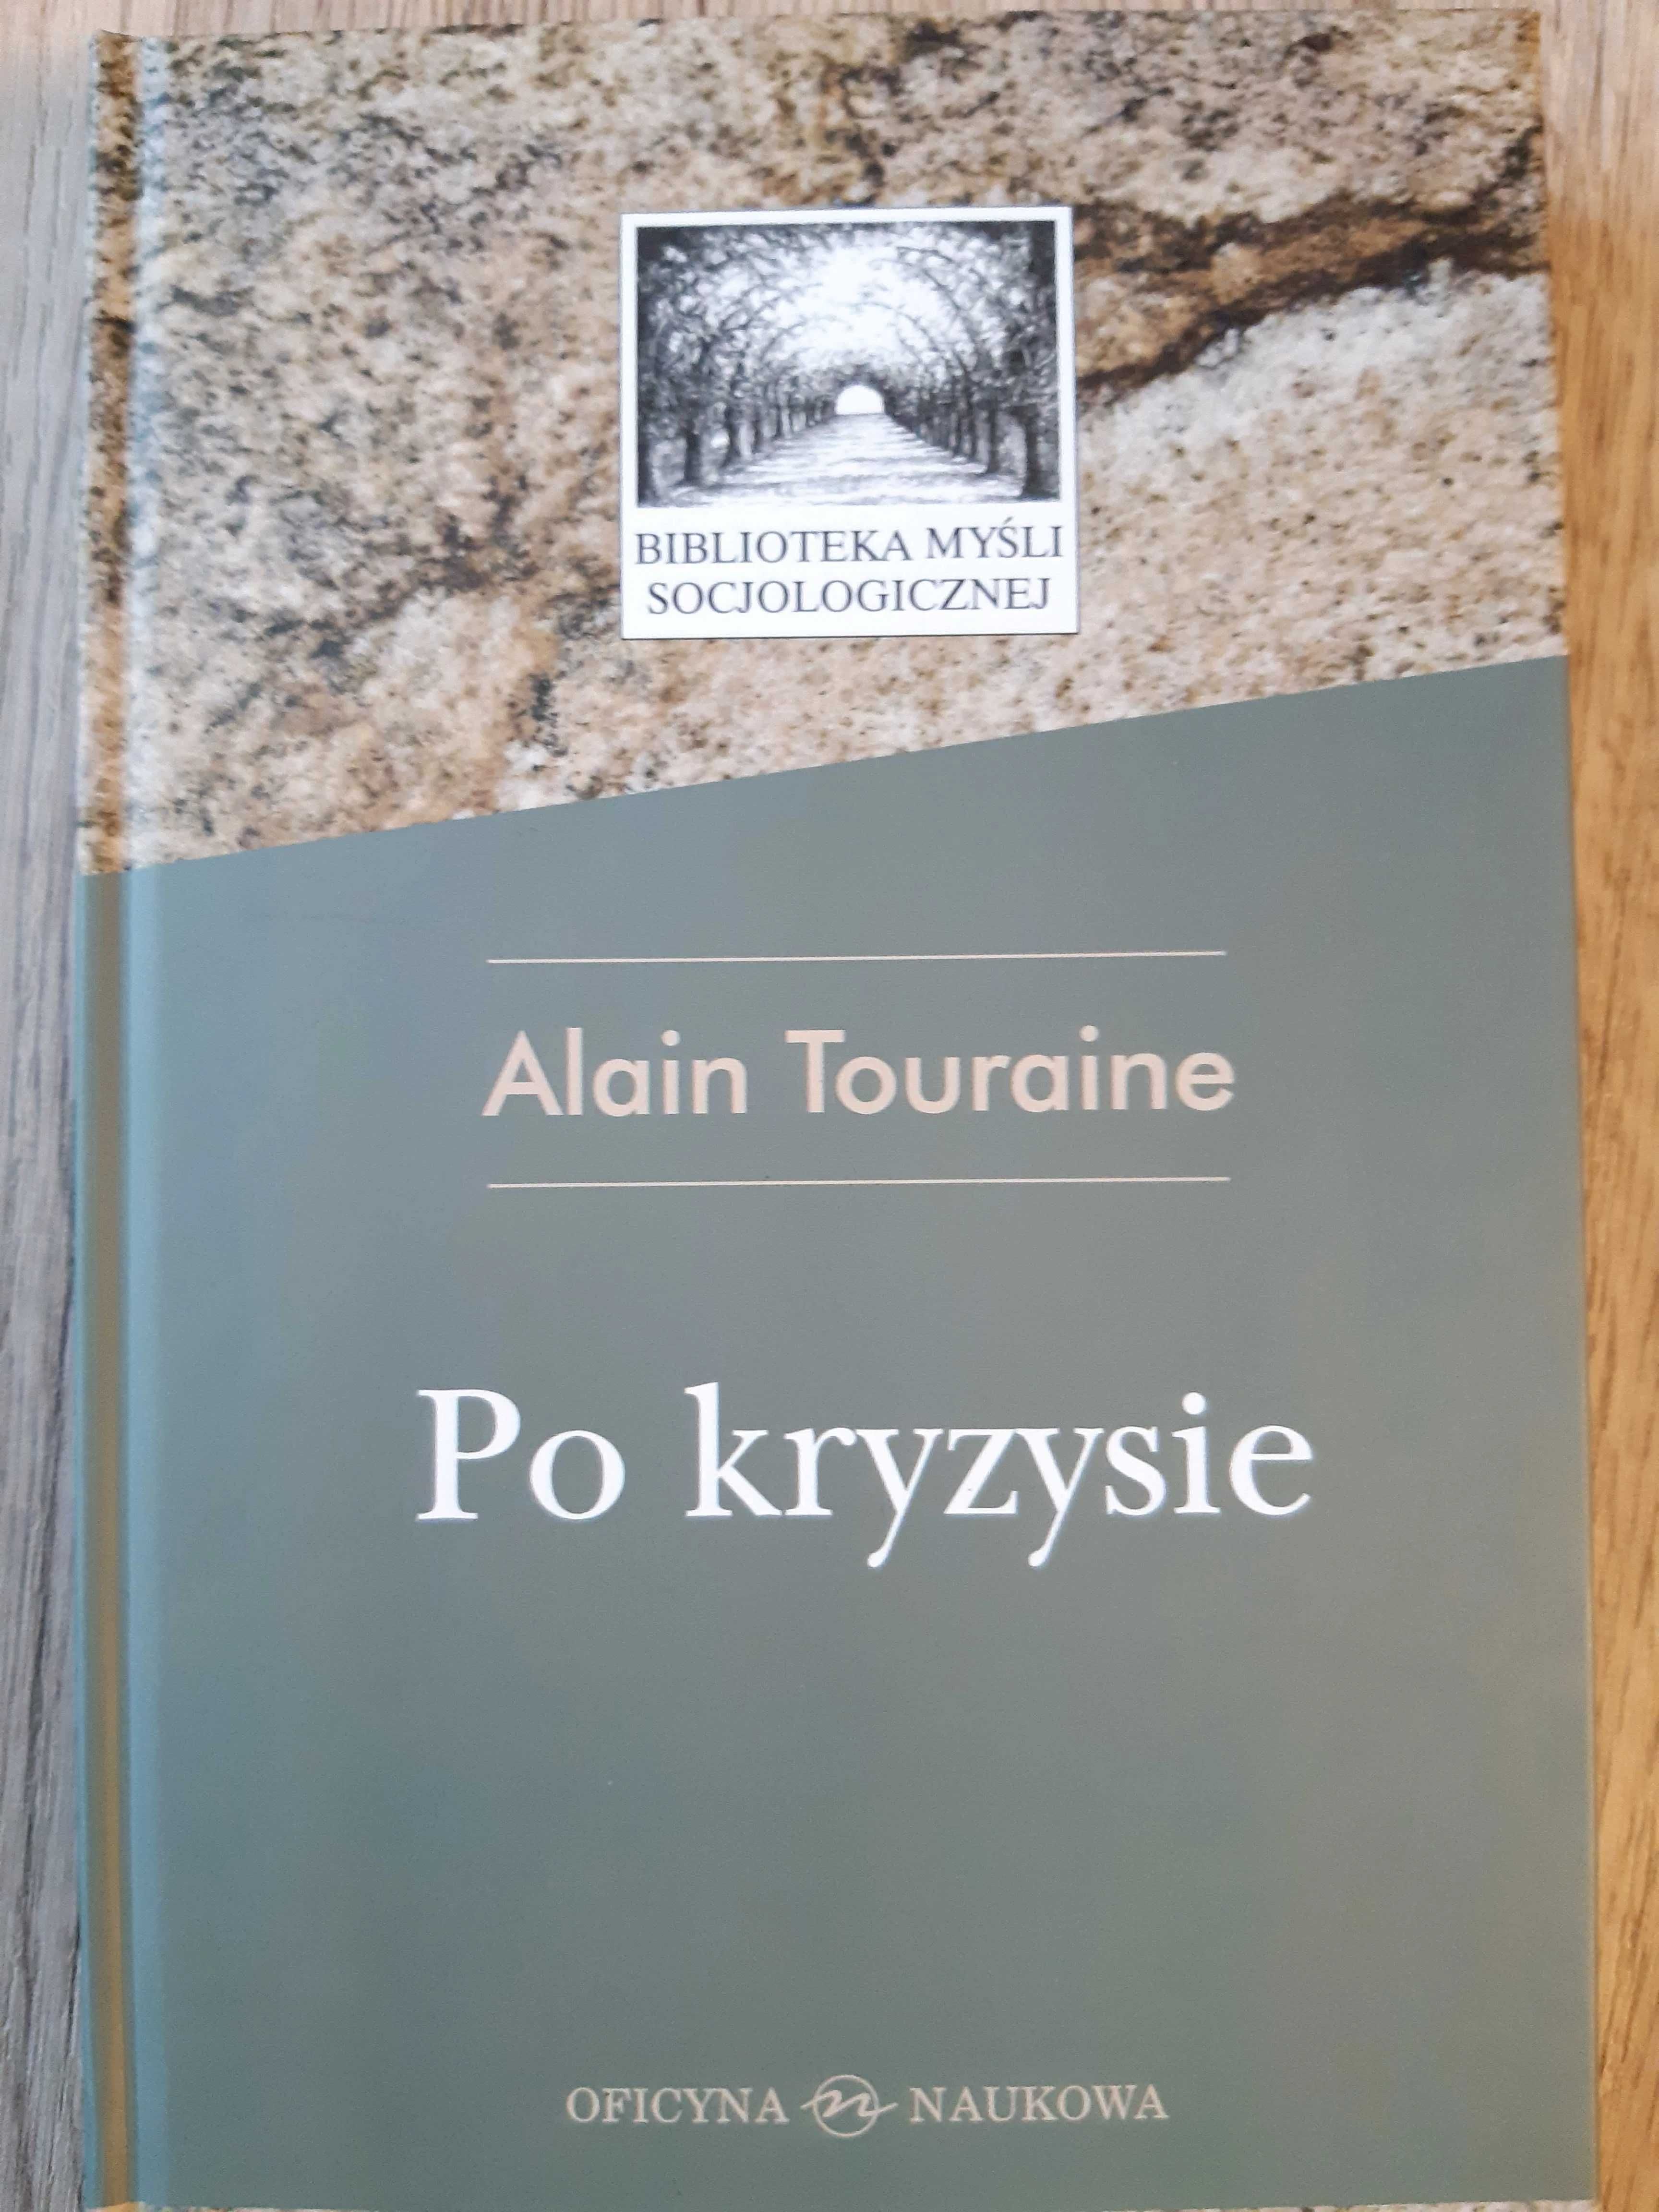 Alain Touraine, "Po kryzysie"